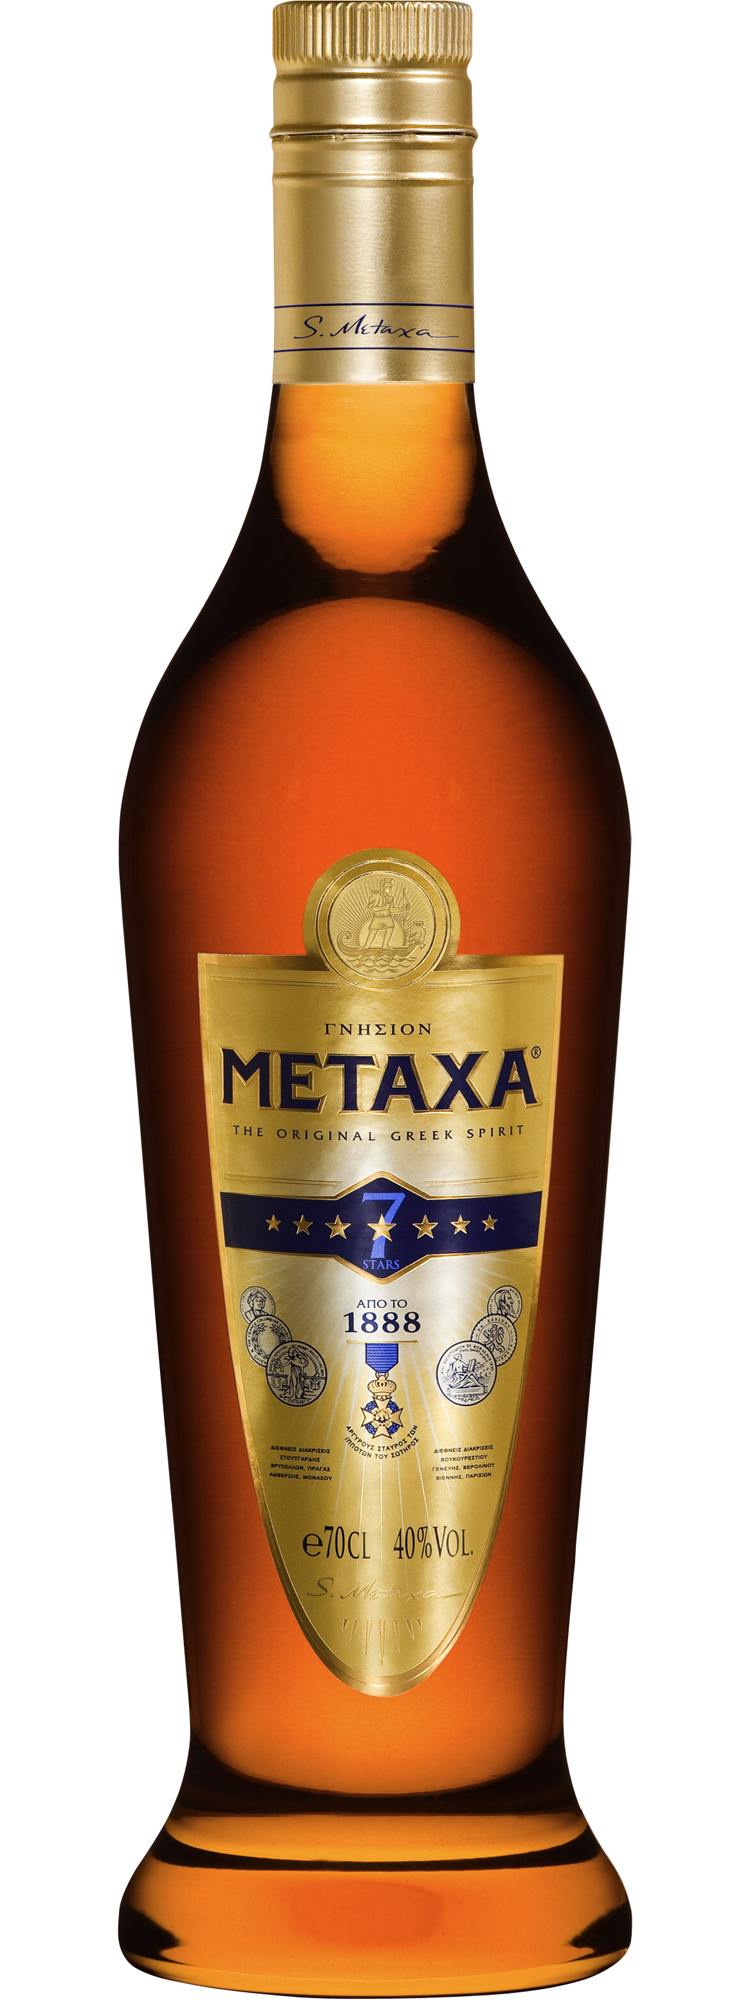 Метакса «Metaxa 7*»